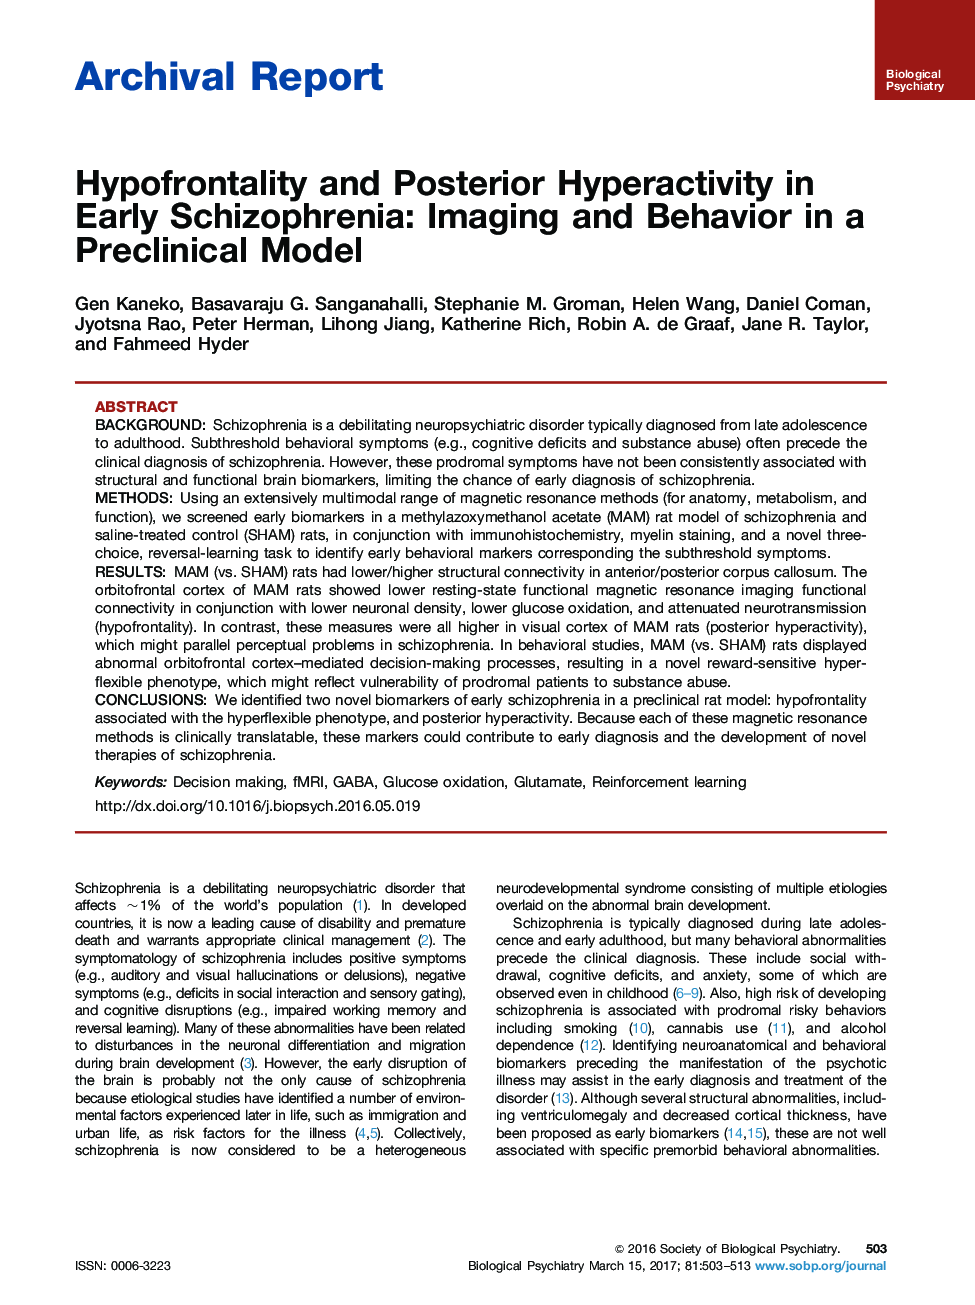 گزارش بایگانی گزارش شده در زمینه روانپرستی و کمخونی در اسکیزوفرنی اولیه: تصویربرداری و رفتار در یک مدل پیش از موعد 